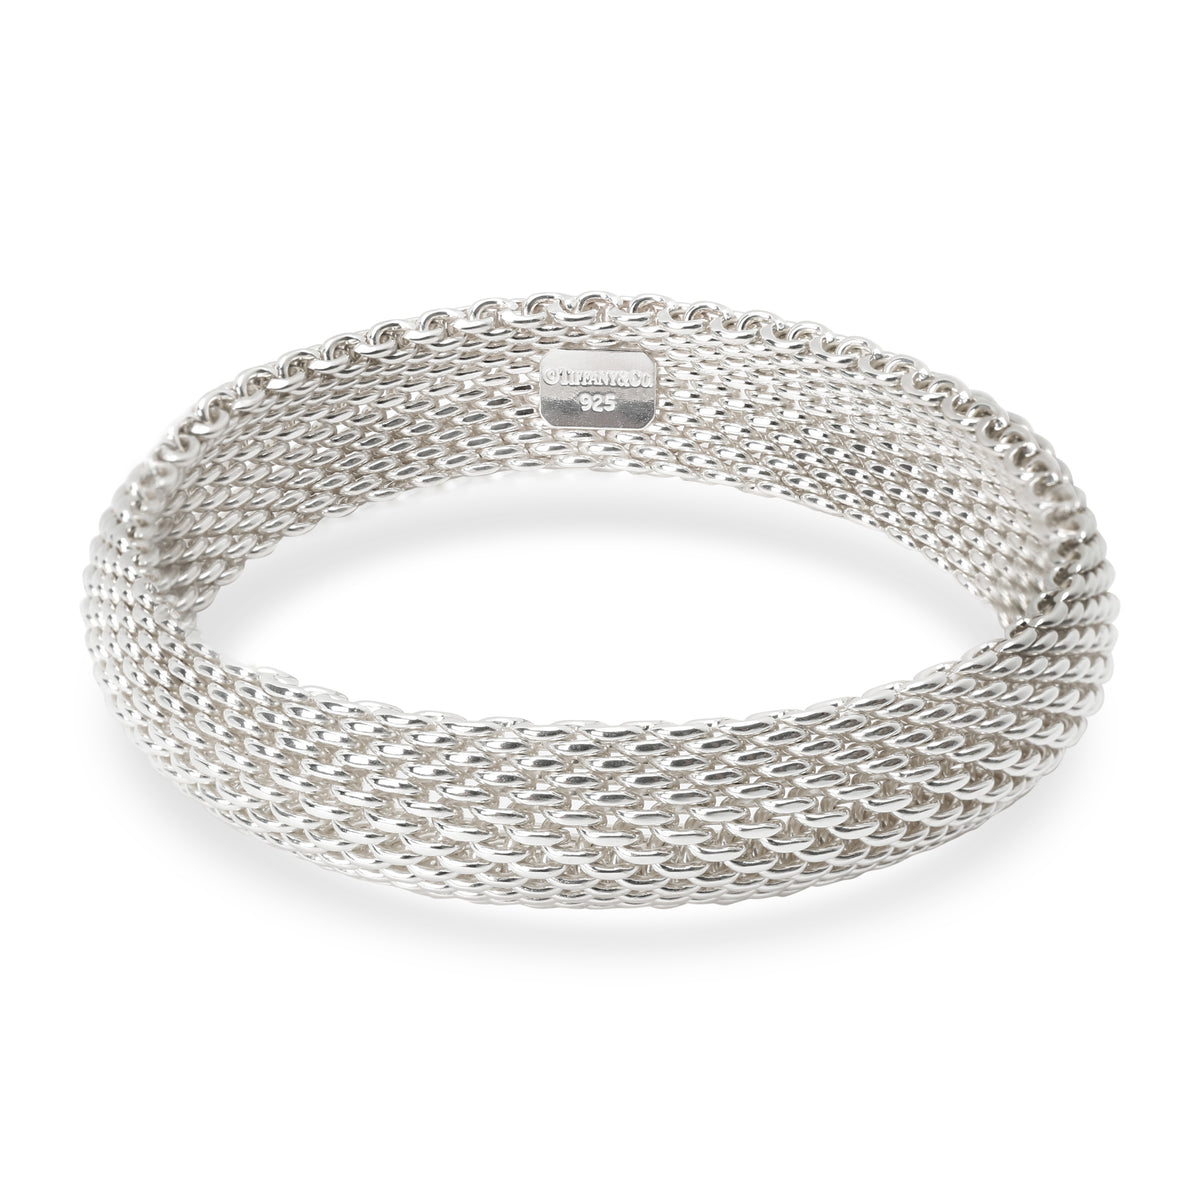 Tiffany & Co. Somerset Mesh Bracelet in  Sterling Silver